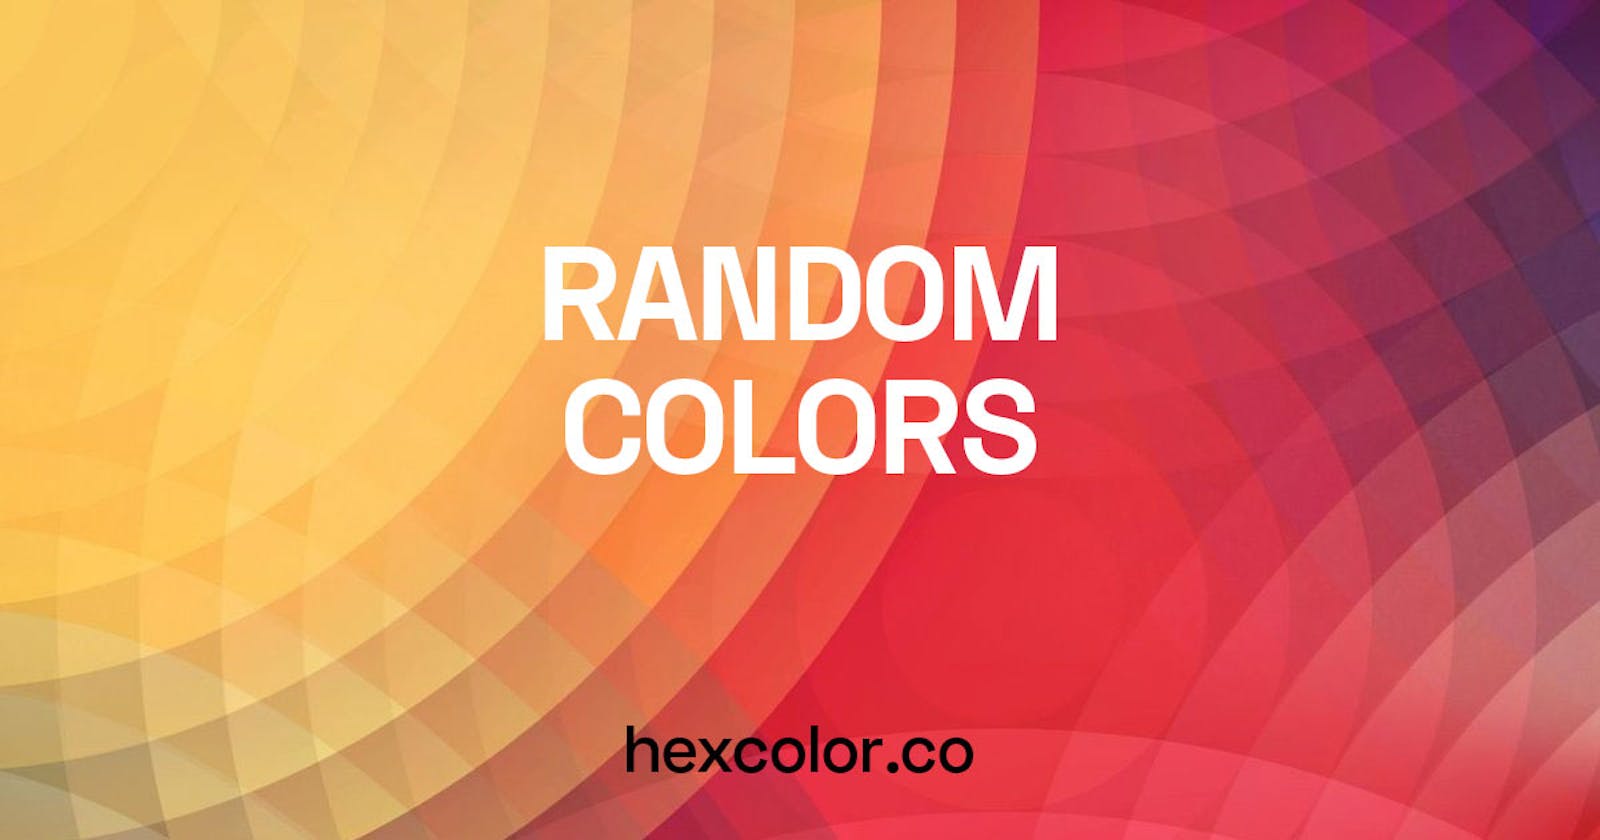 Random Hexadecimal Color Code Generator